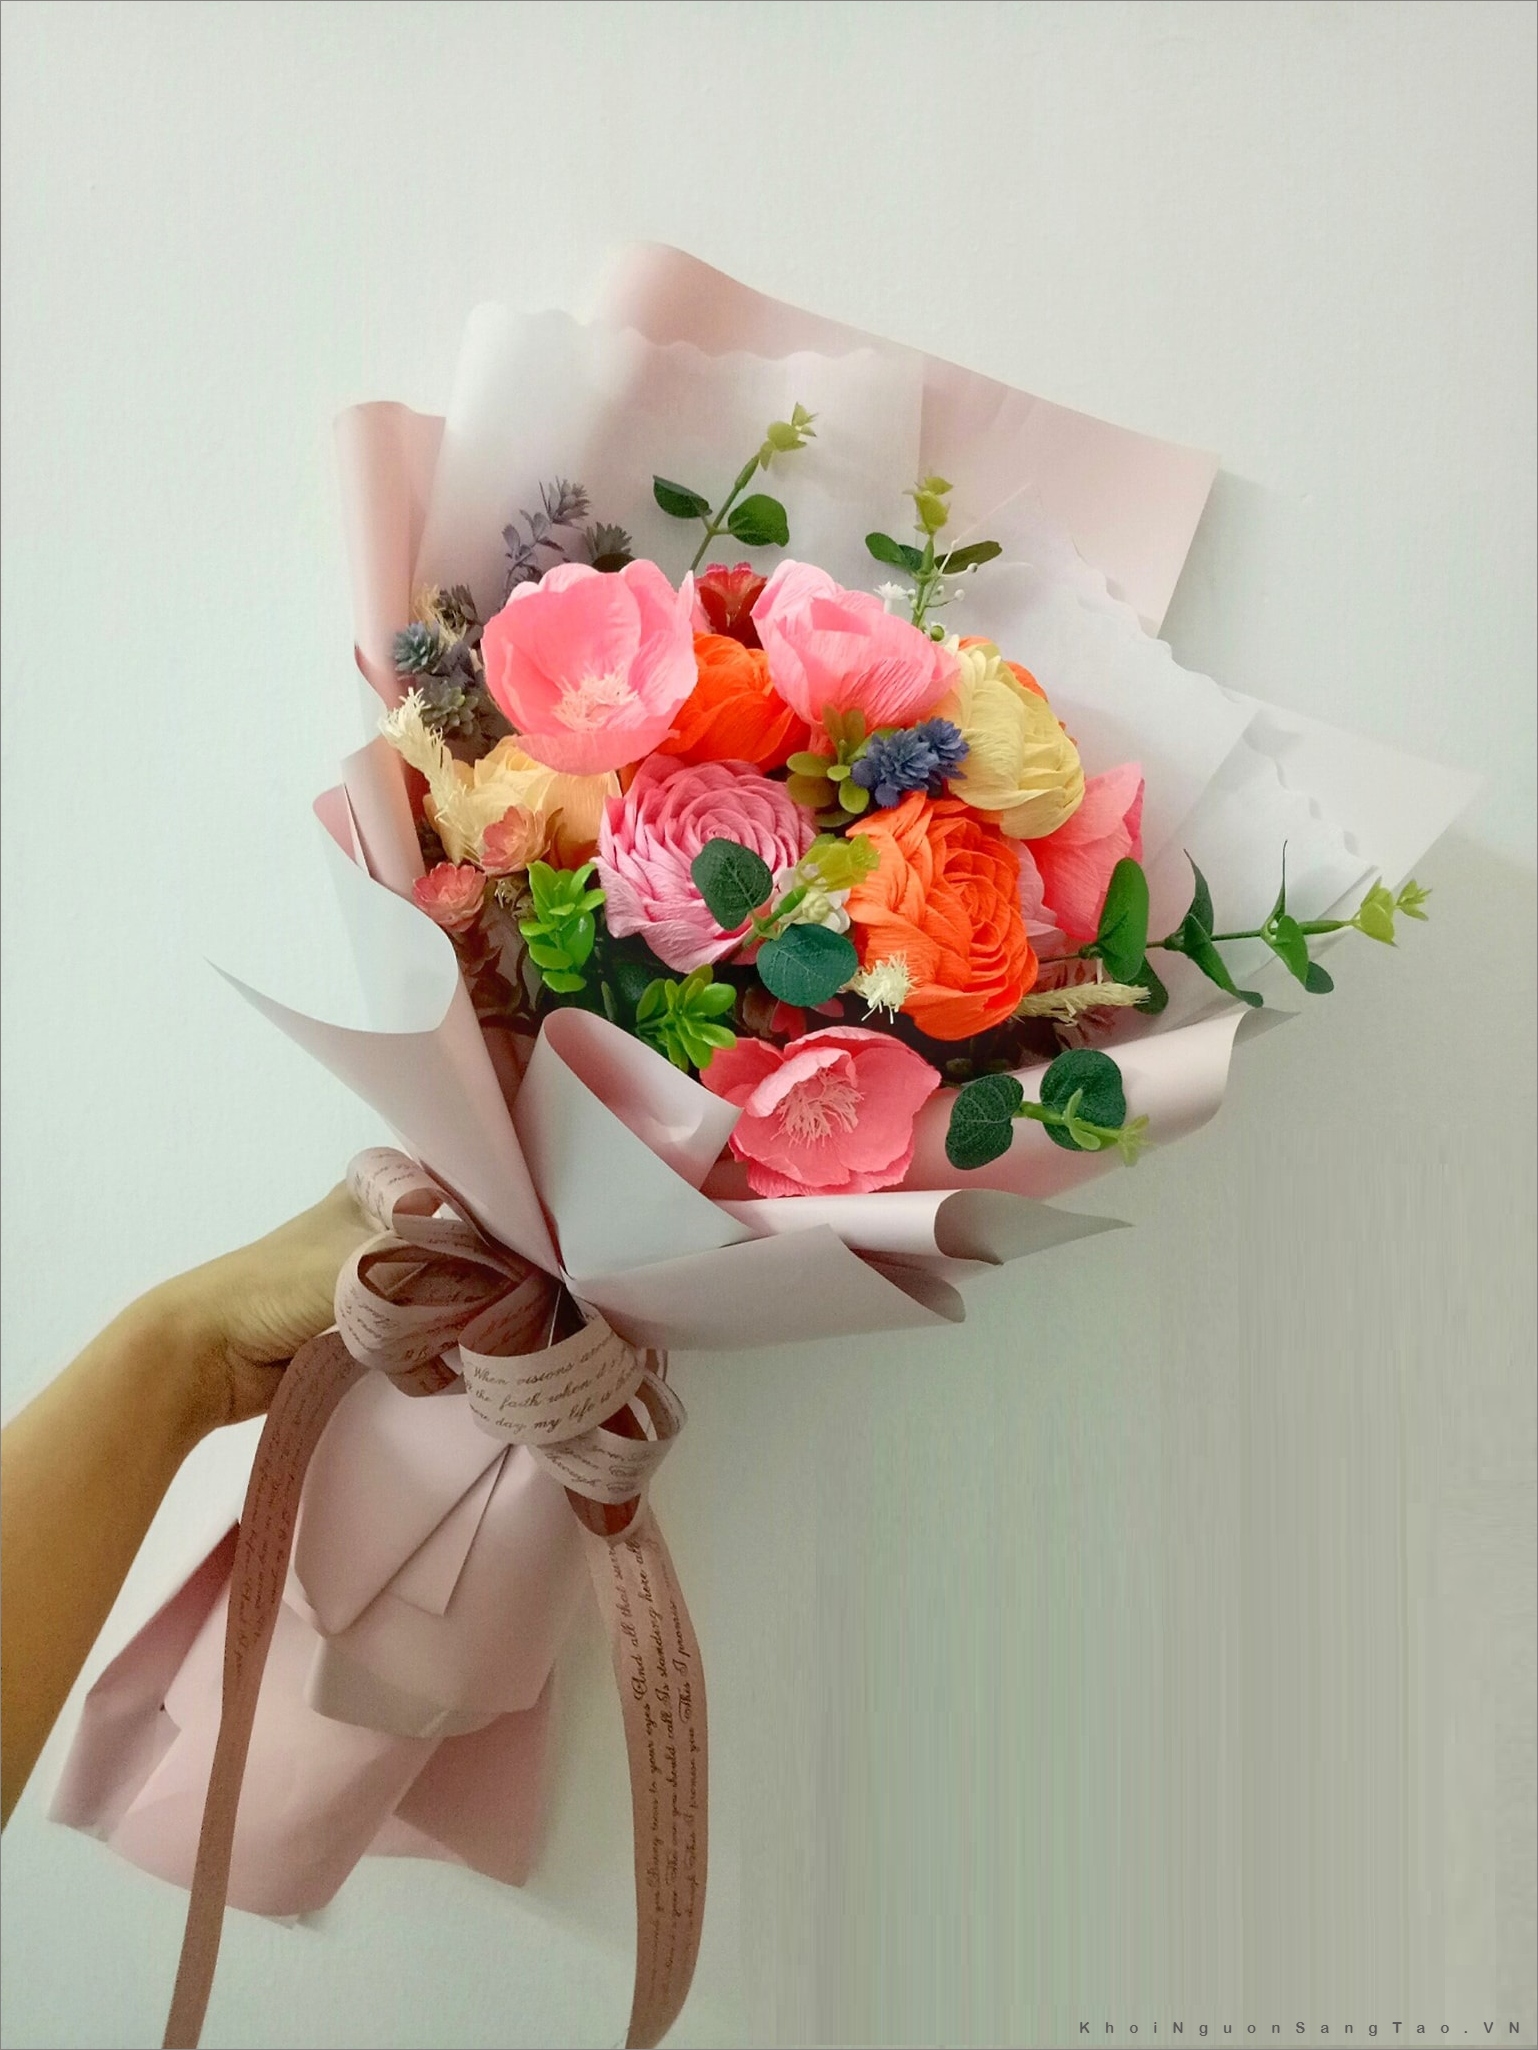 Làm hoa bằng giấy với 3 loài hoa phổ biến: hoa hồng, tulip, tú cầu,…